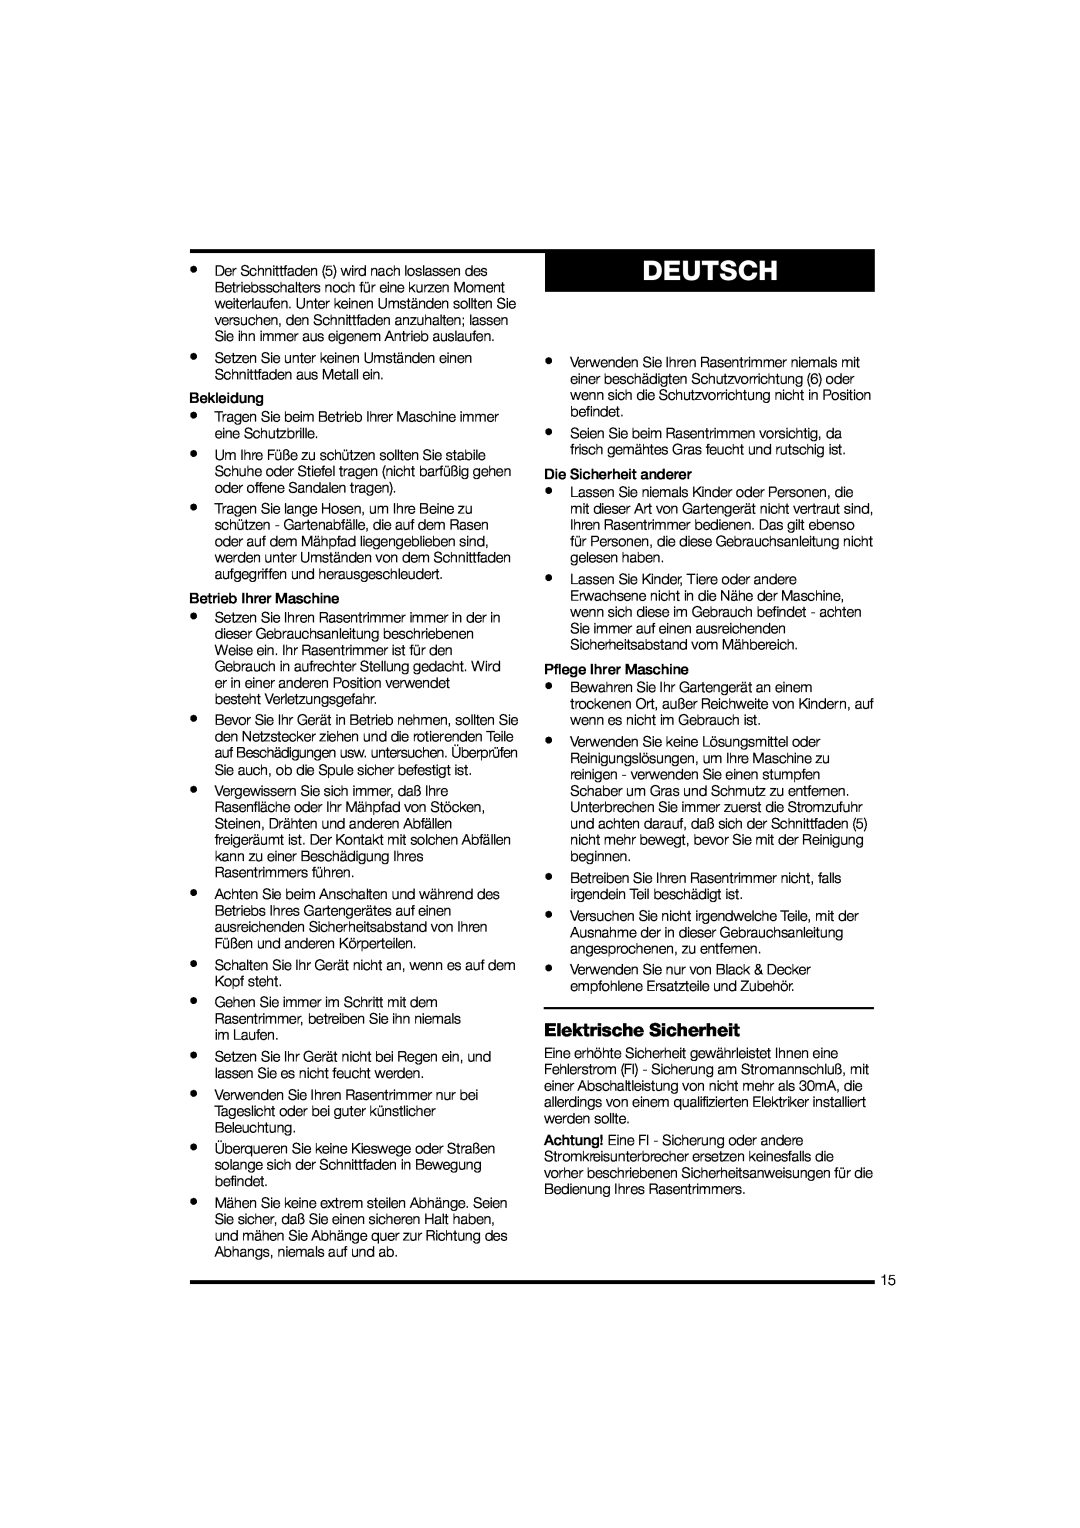 Black & Decker GL570 instruction manual Deutsch, Elektrische Sicherheit 